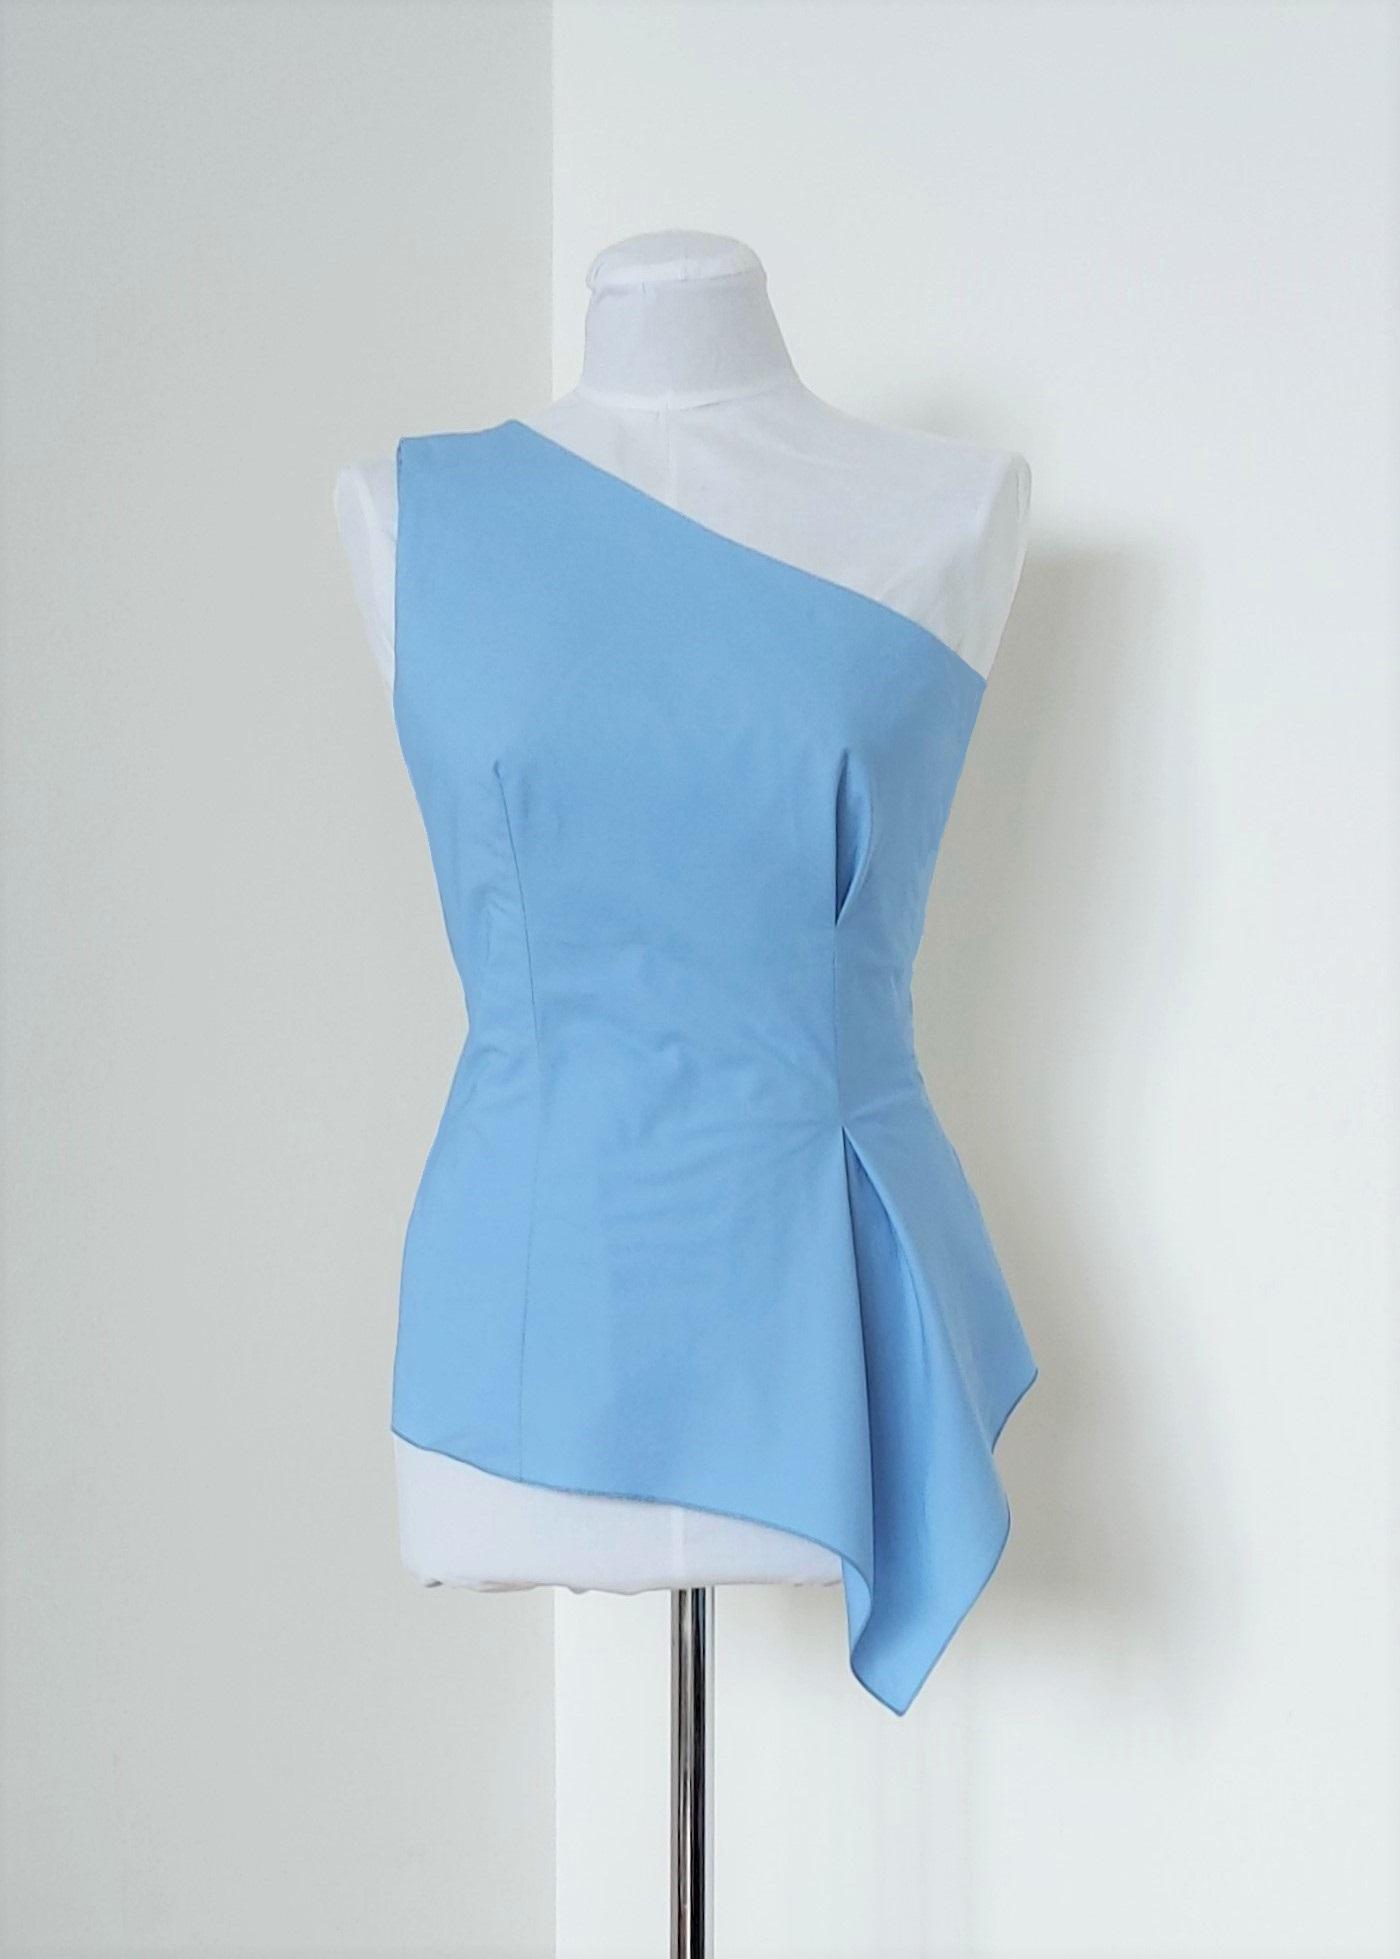 Selected image for PAMUKLIK Ženska asimetrična bluza na jedno rame sa otvorenom faltom STELLA svetloplava